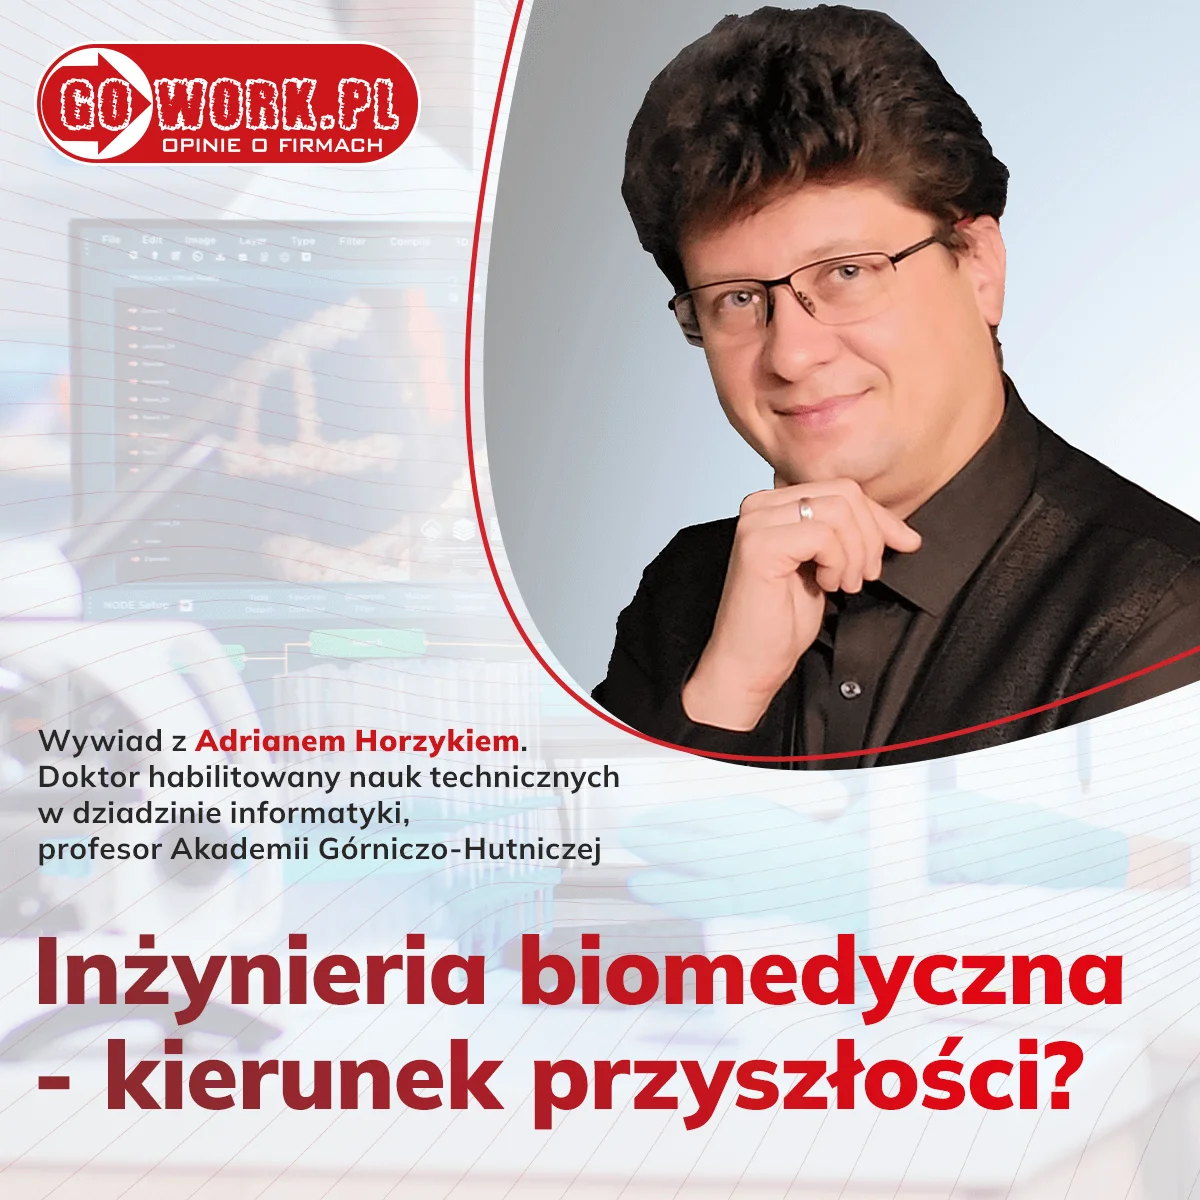 Dr. hab. Adrian Horzyk